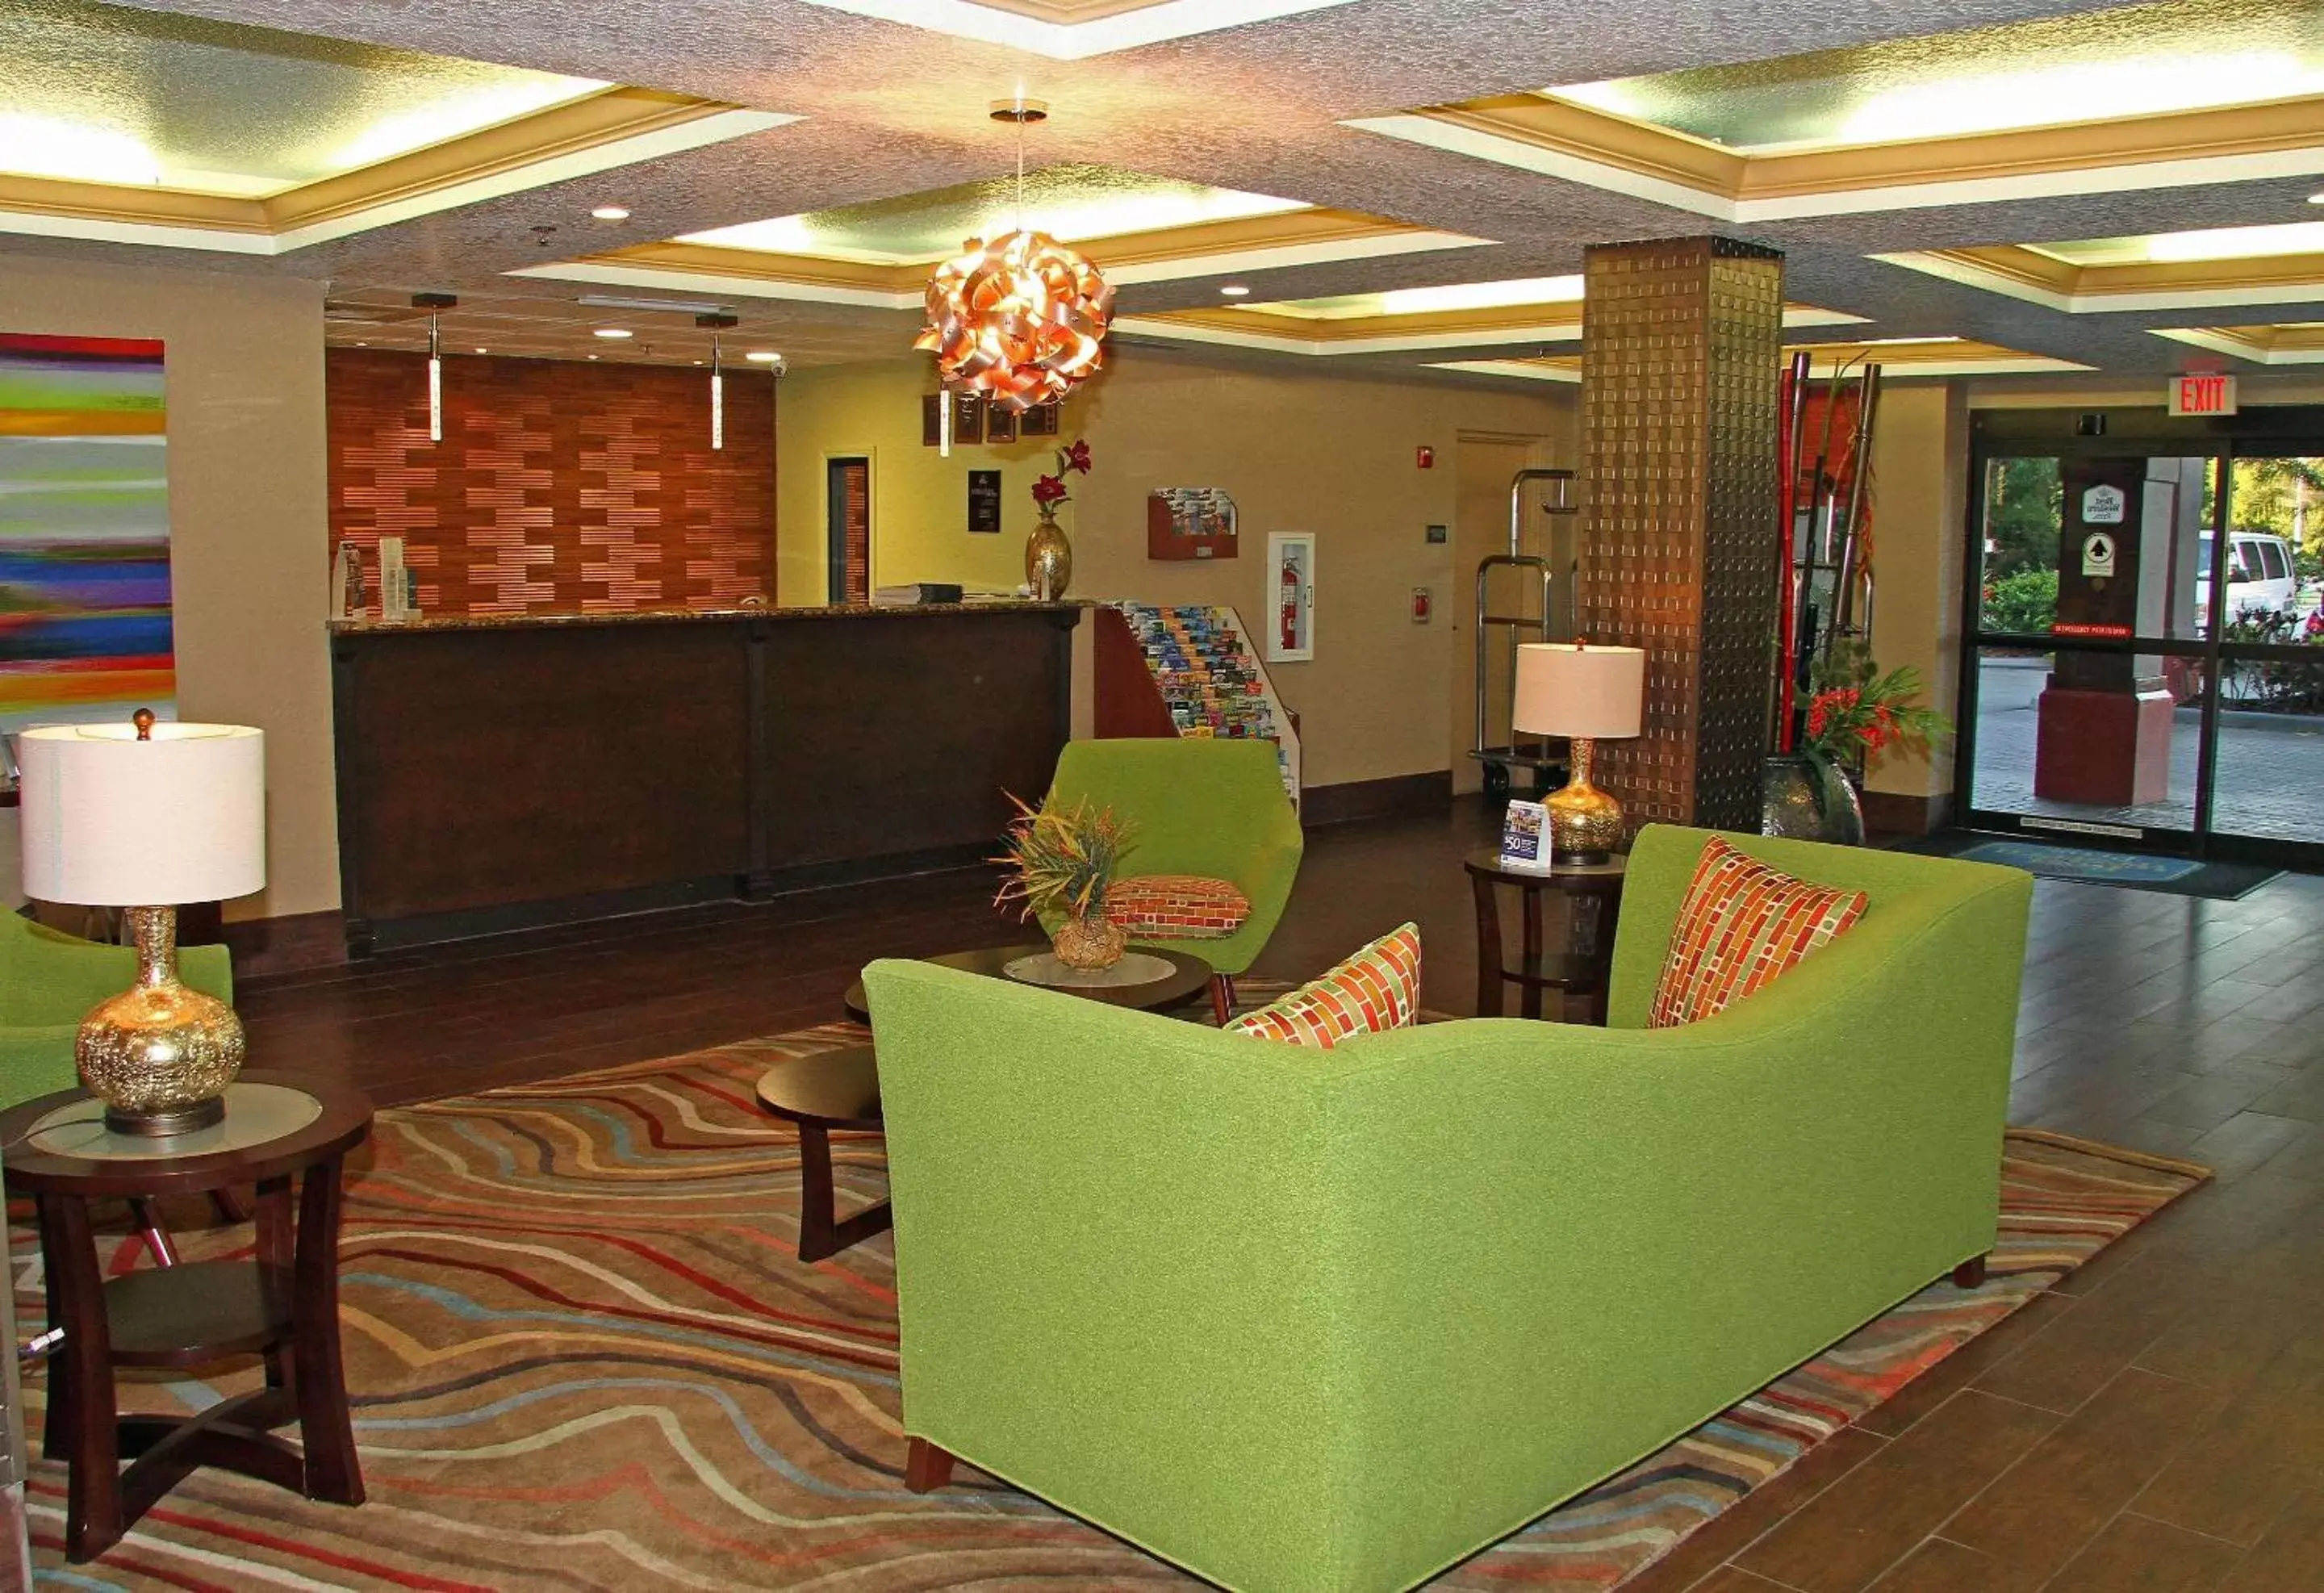 Lobby or reception, Lobby/Reception in Best Western Plus Universal Inn